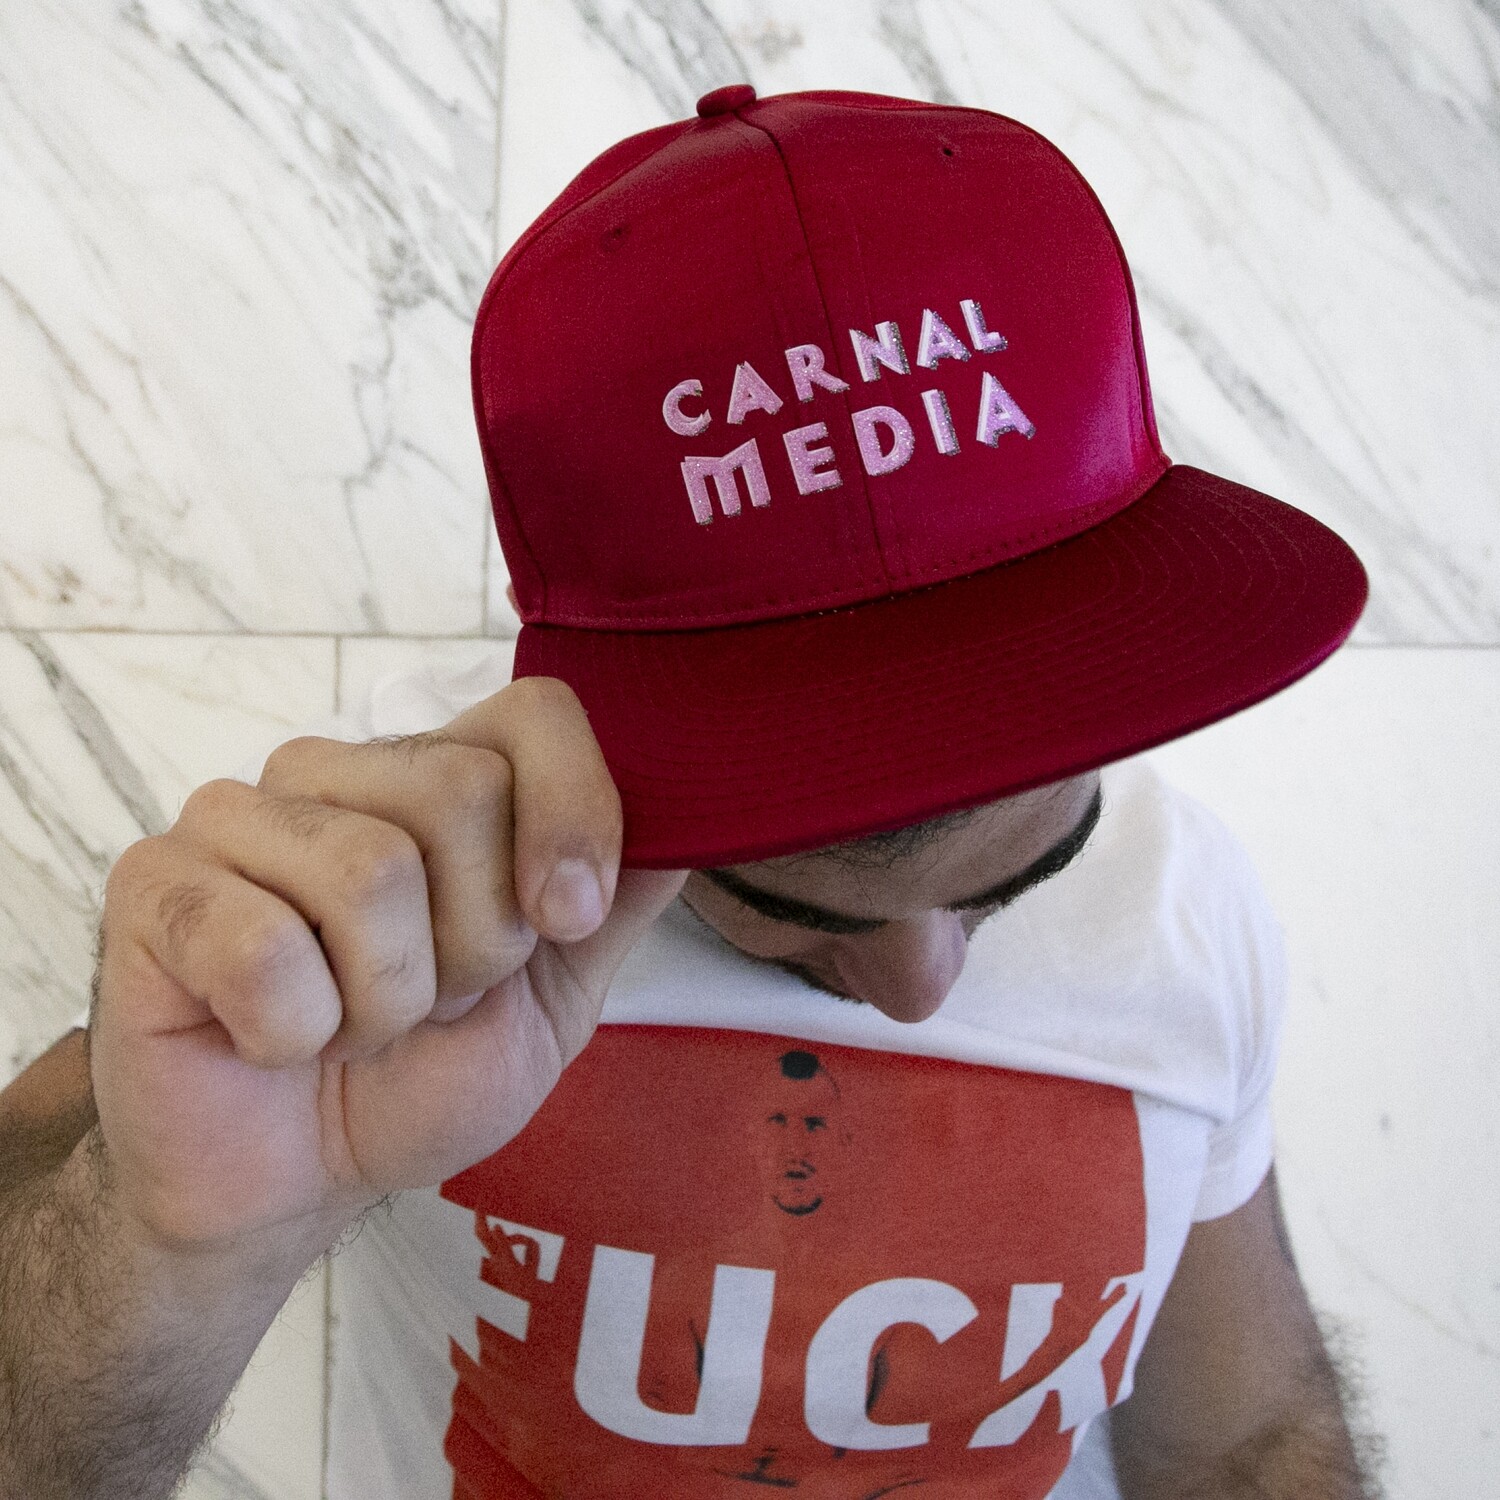 Carnal Media Hat in Red Satin